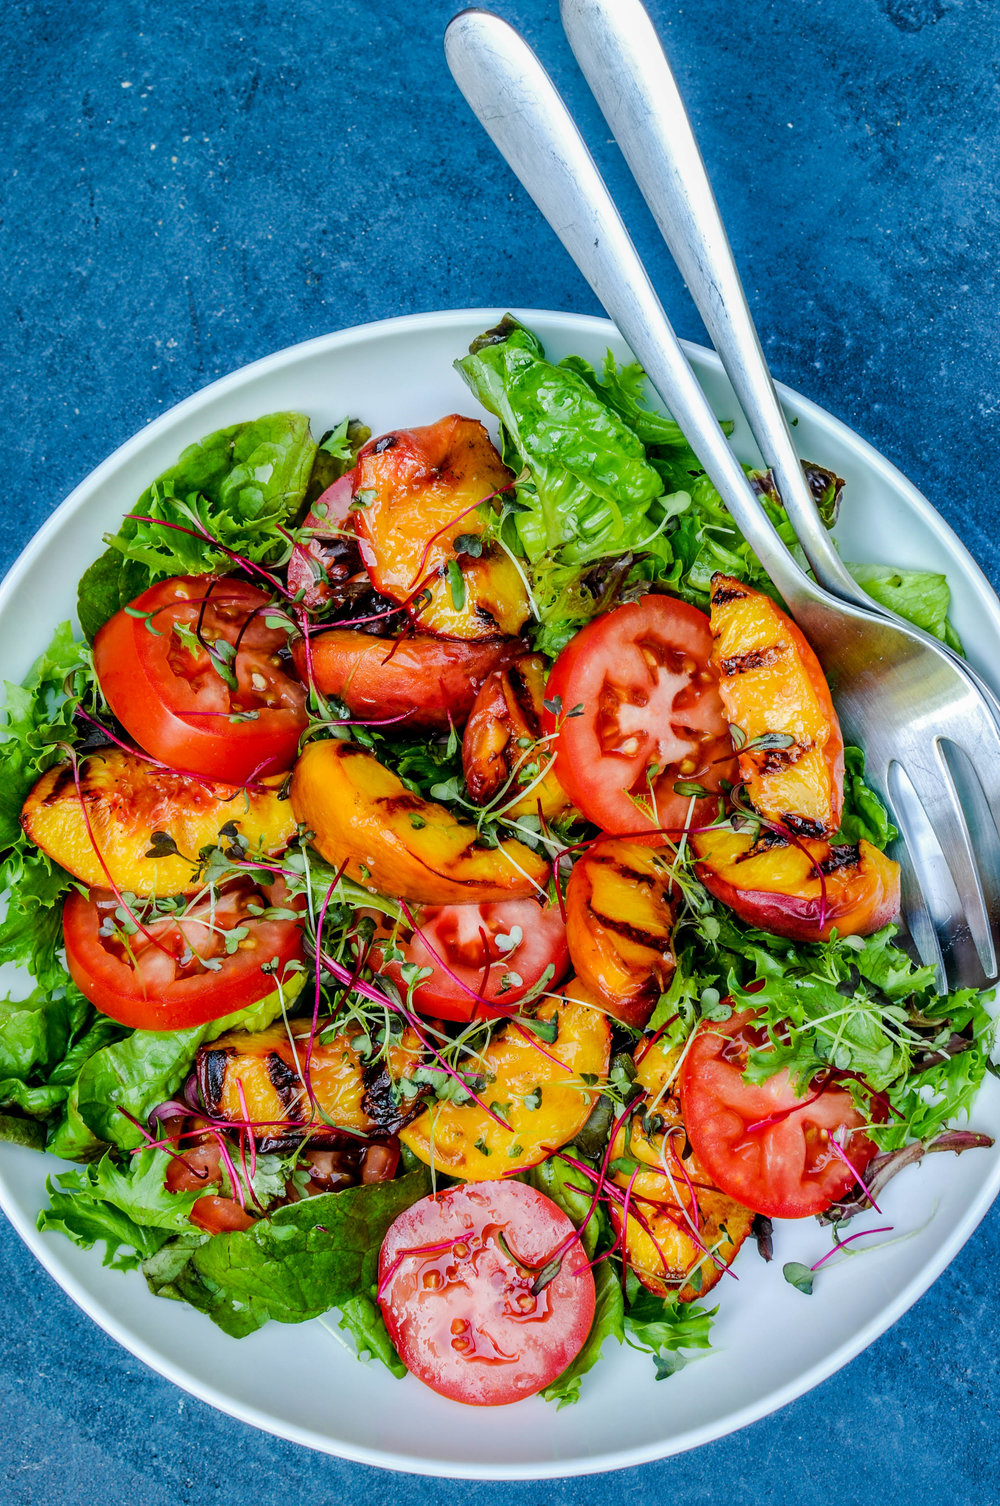 Si vous êtes intéressé par de nouvelles saveurs, essayez cette recette: ajoutez des pêches grillées à votre salade de tomates et de laitue.